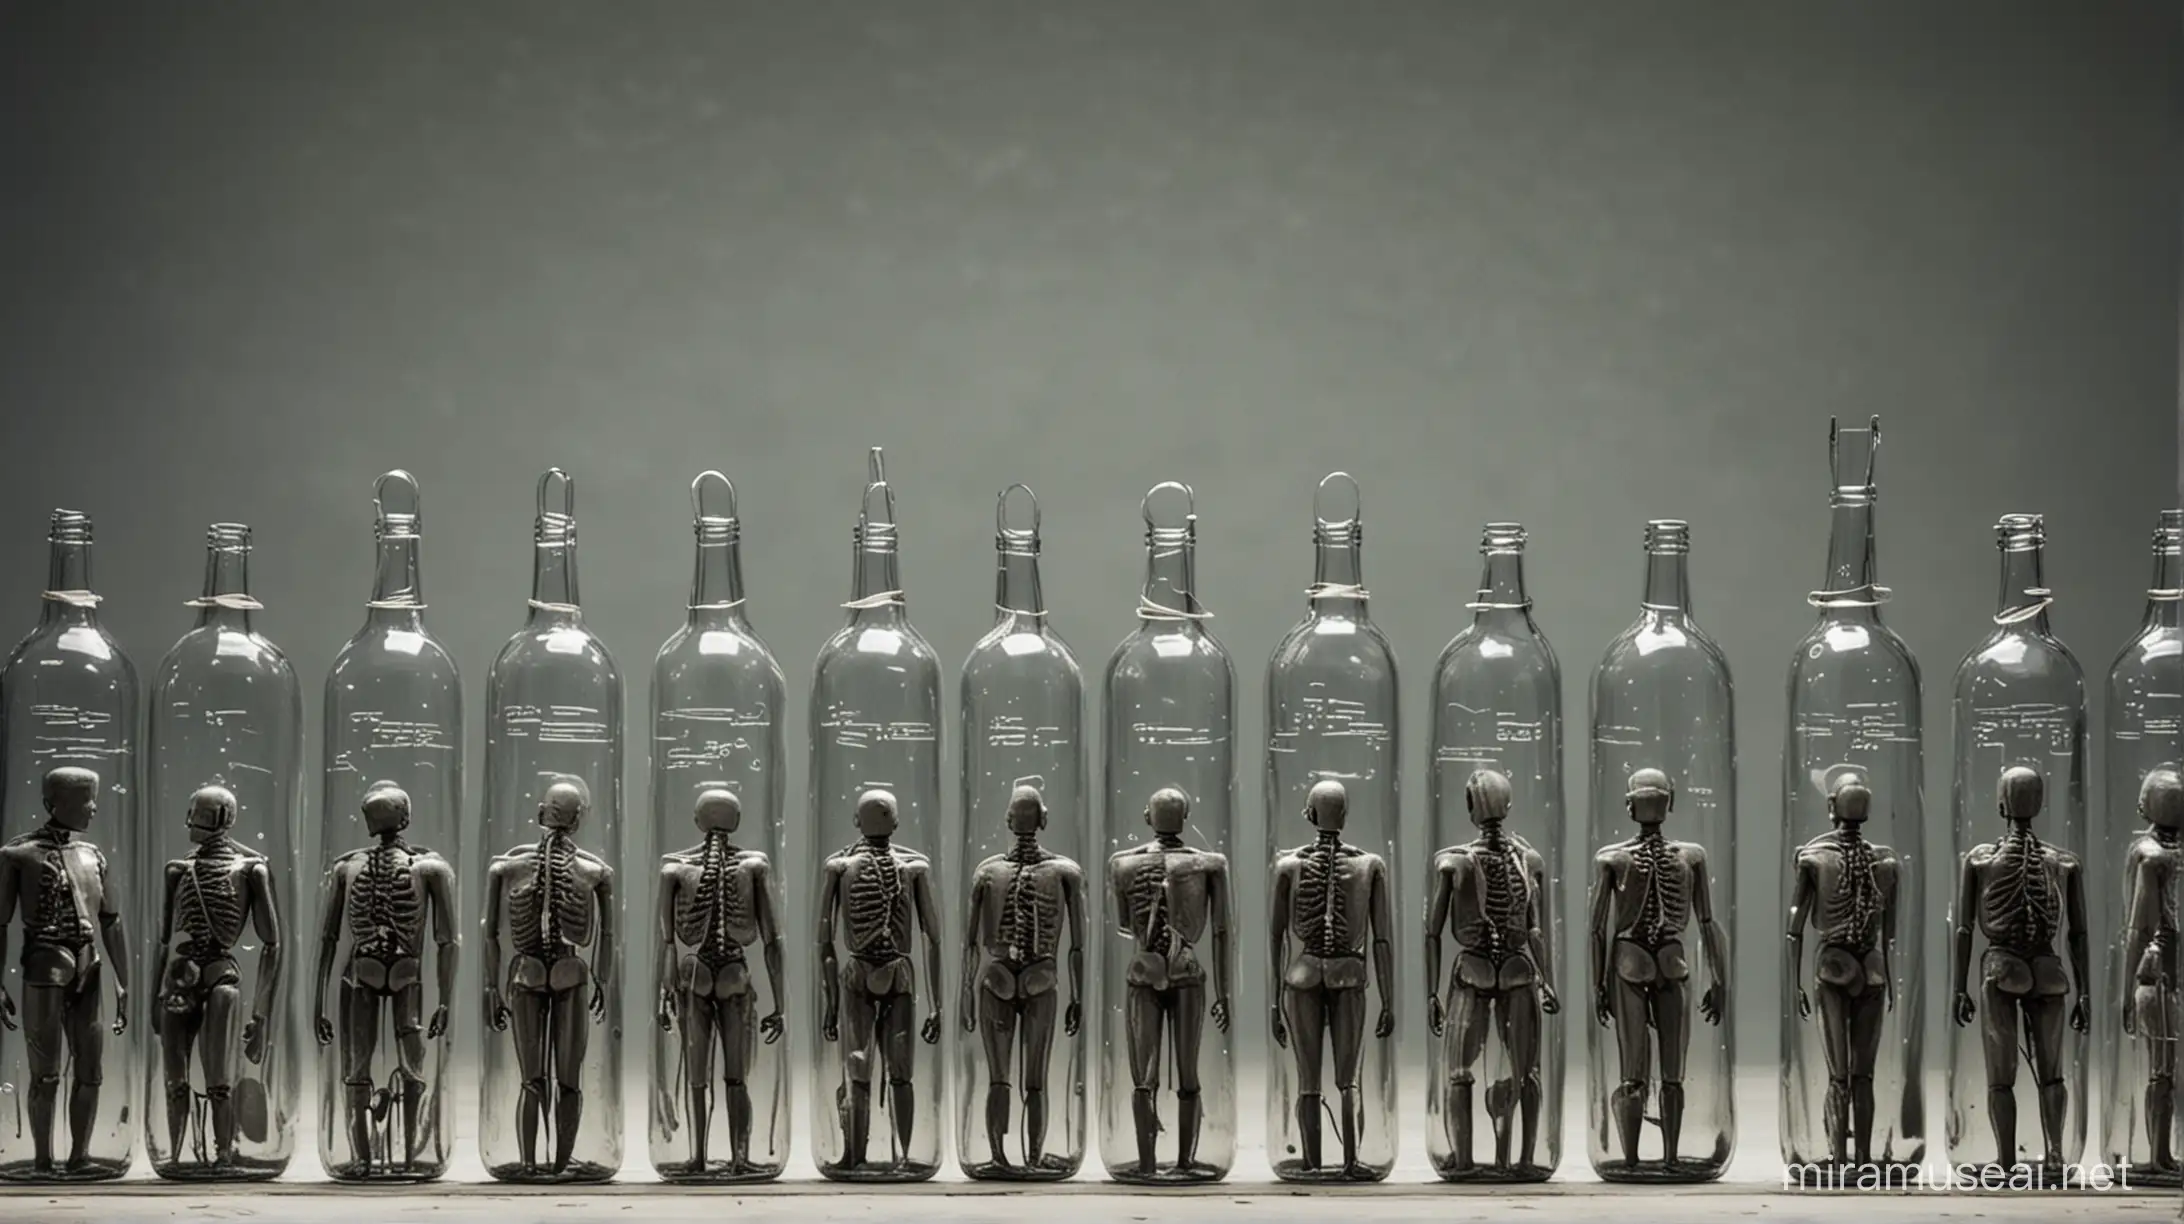 Glass Bottle Orchestra Unique Musical Ensemble Concept